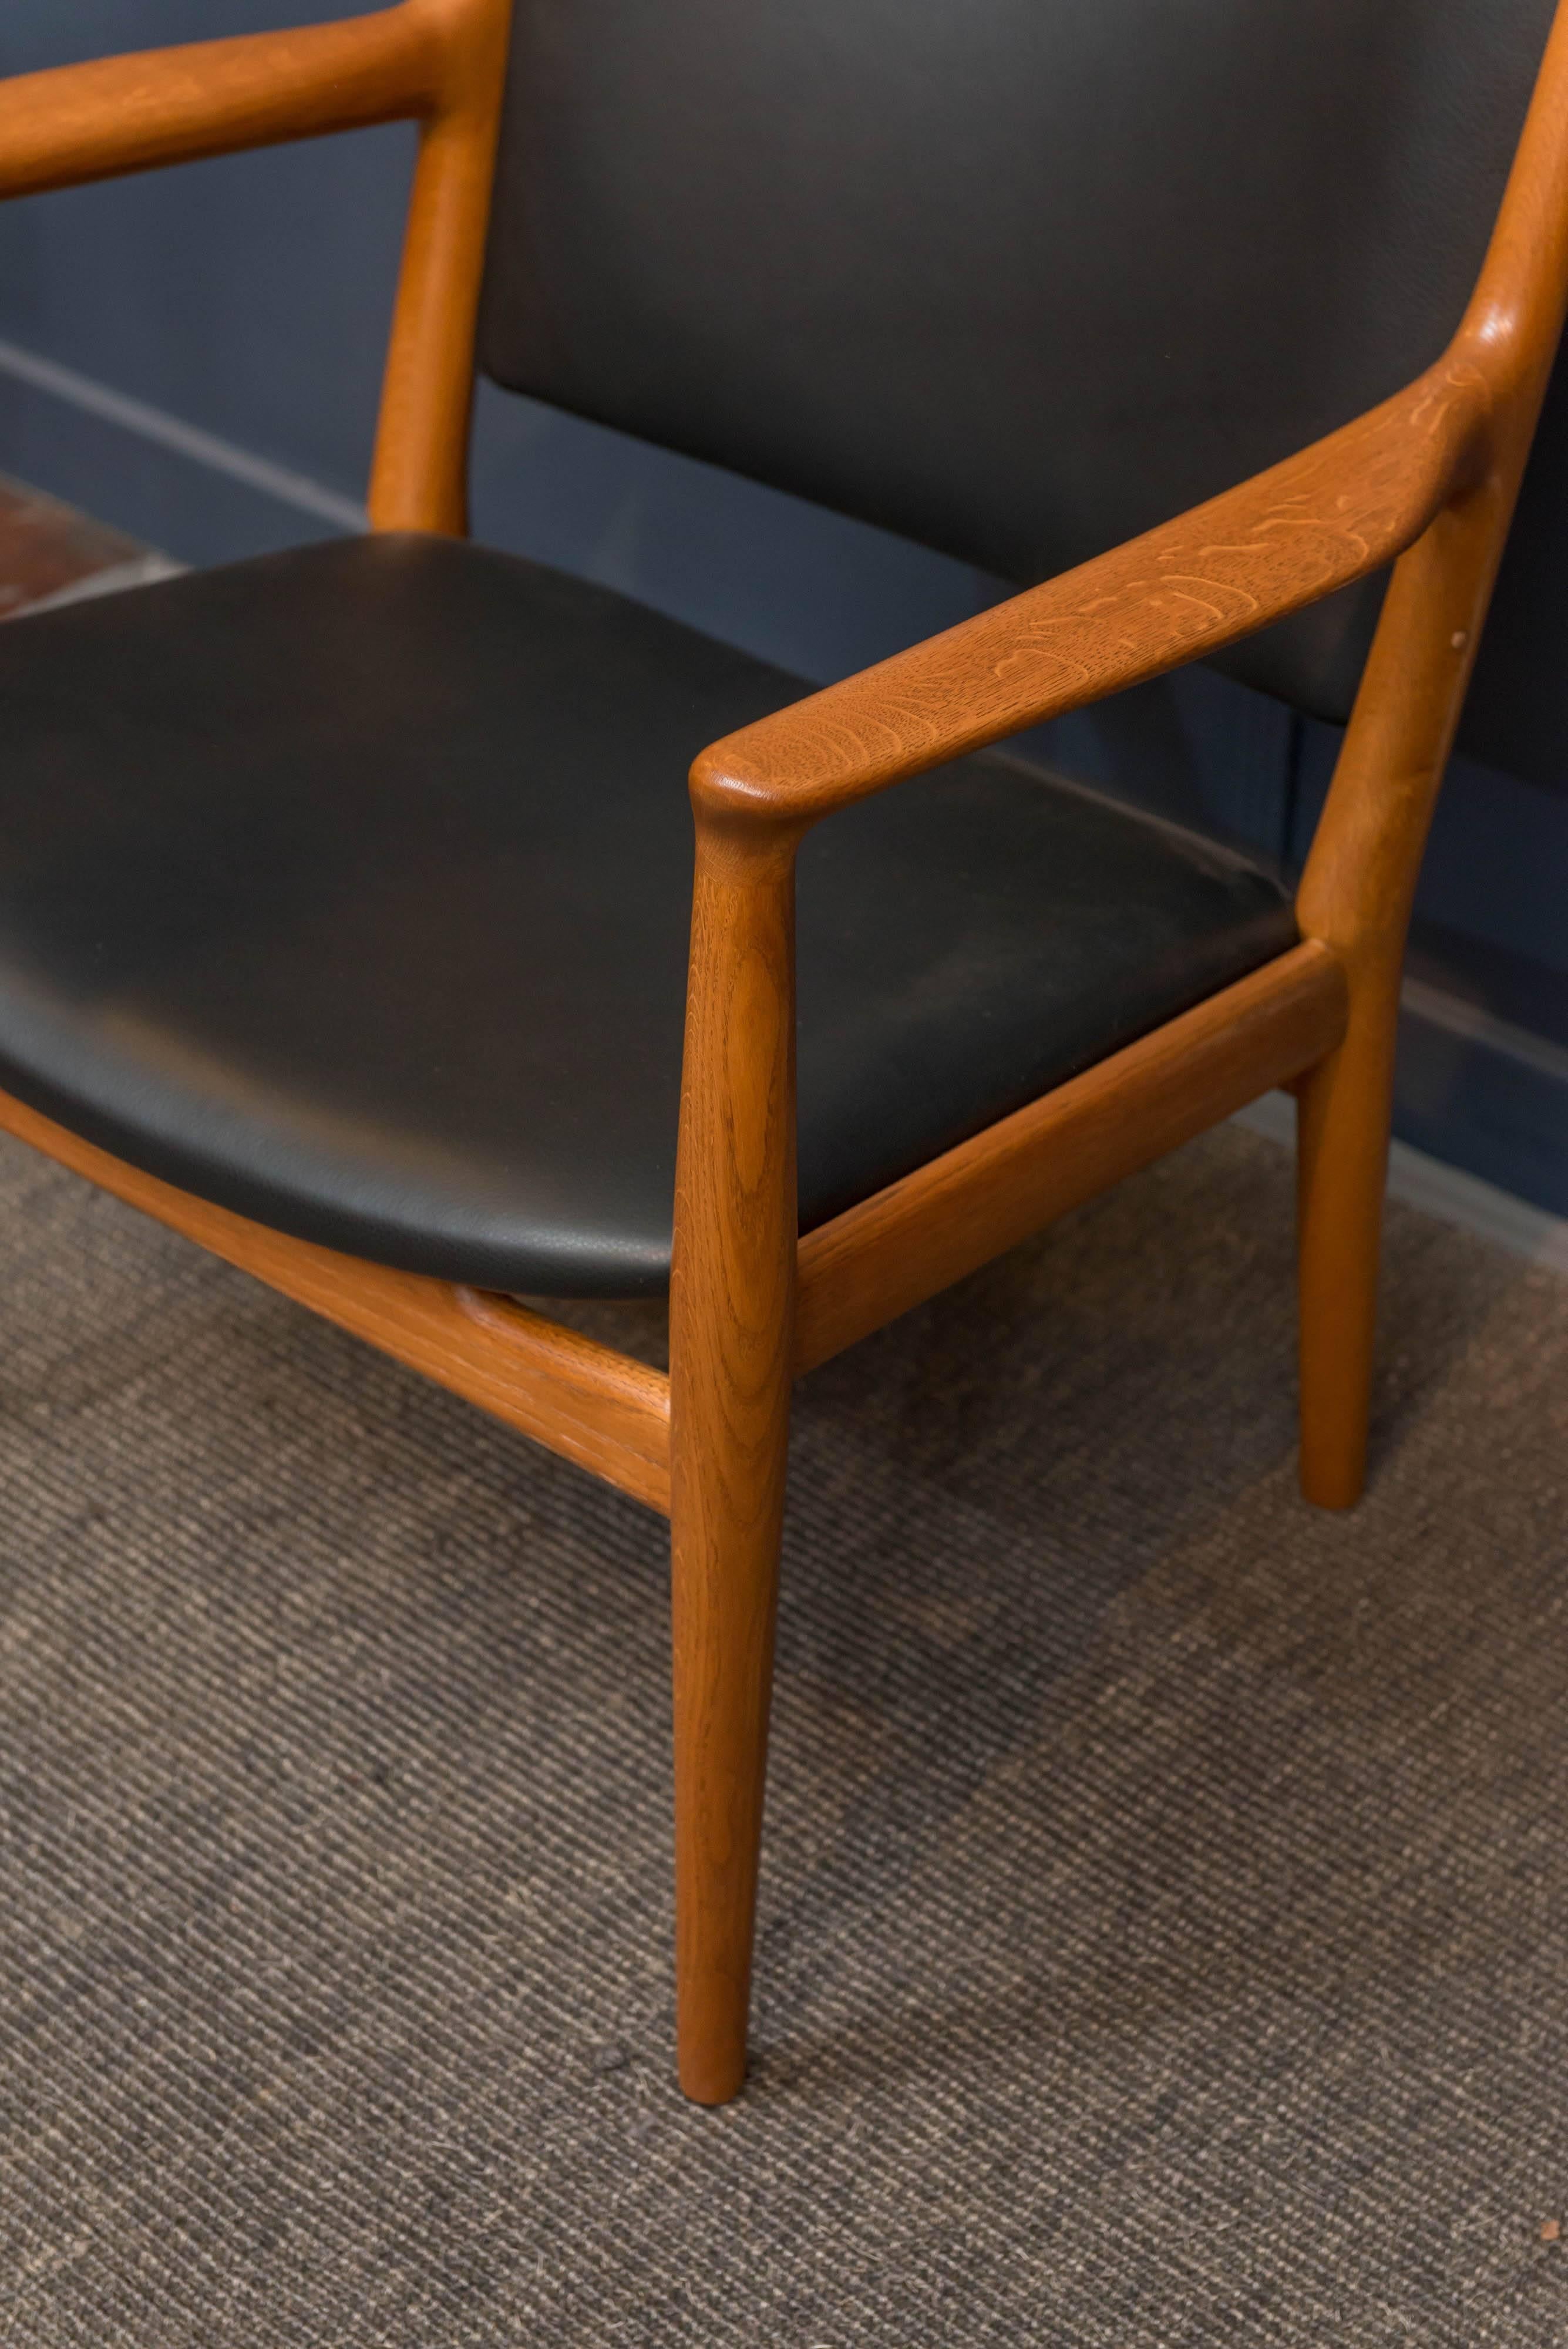 Chaise de salon en chêne et en teck modèle JH-713 de Hans J Wegner pour Johannes Hansen, Danemark.
L'élégance simple combinée à une construction et des restaurations de haute qualité en font un fauteuil de salon robuste parfait. 
Nouvelle sellerie